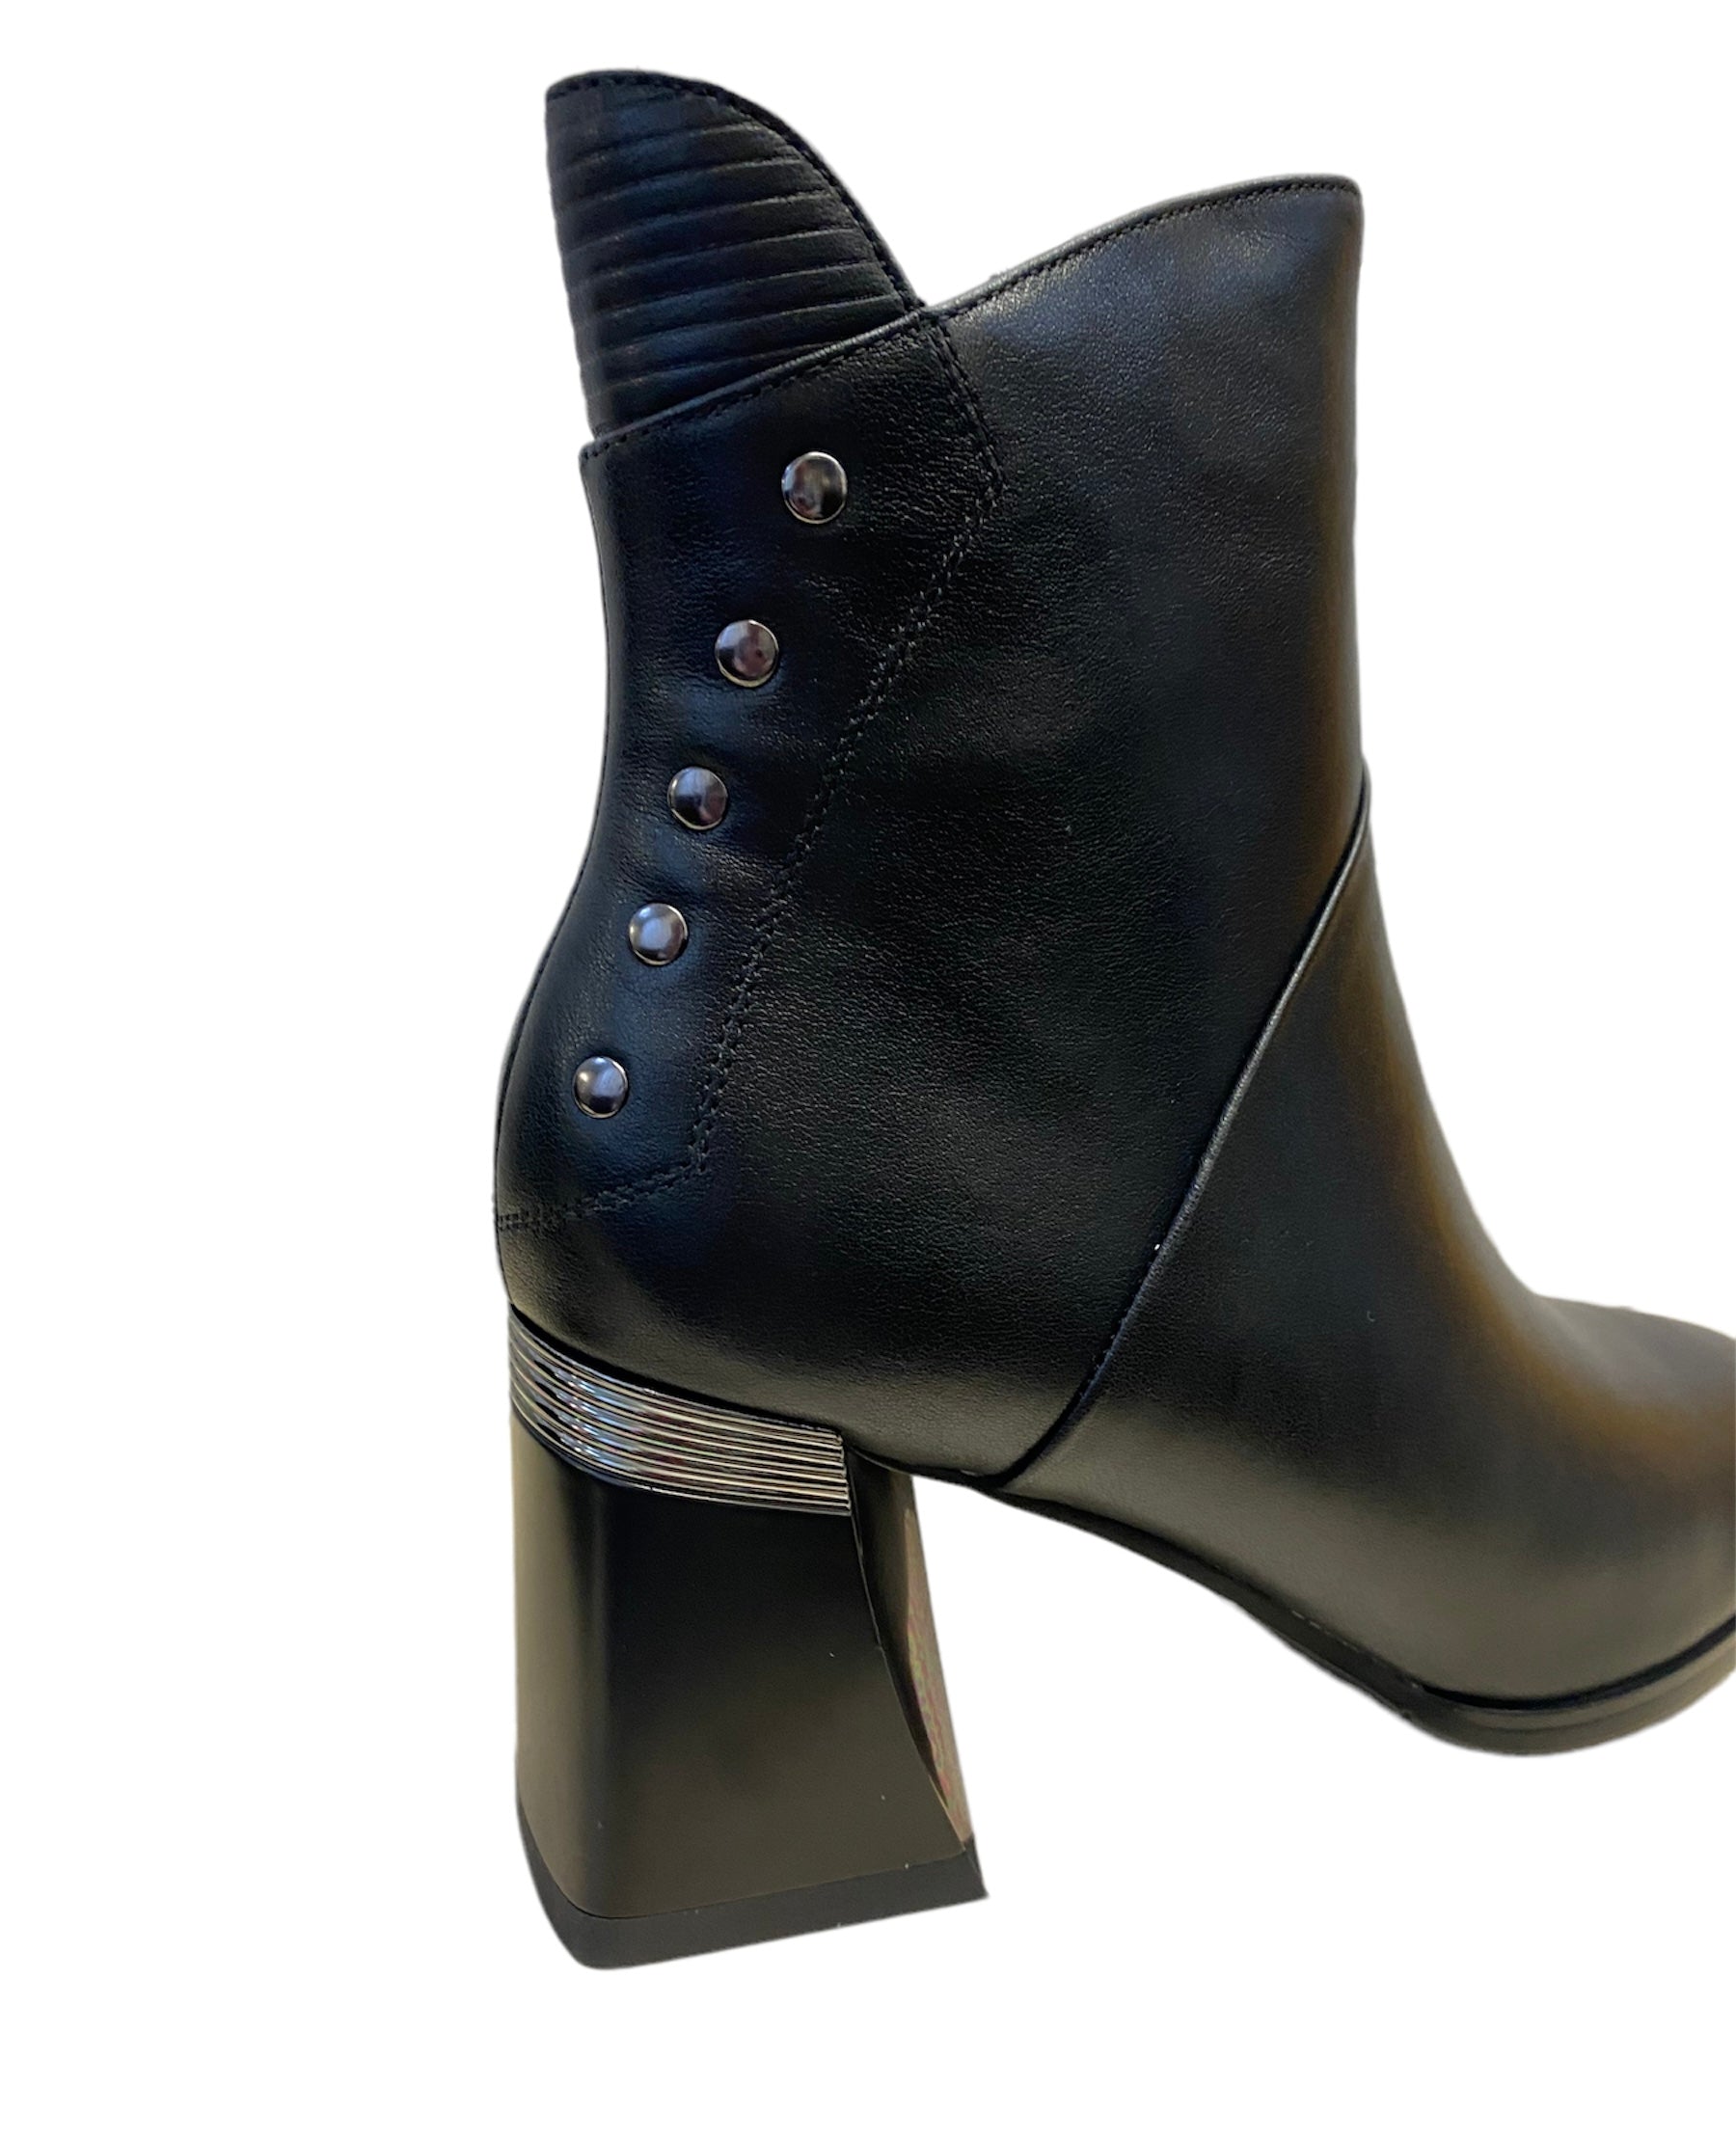 LORETTA VITALE Black Leather Heeled Boot